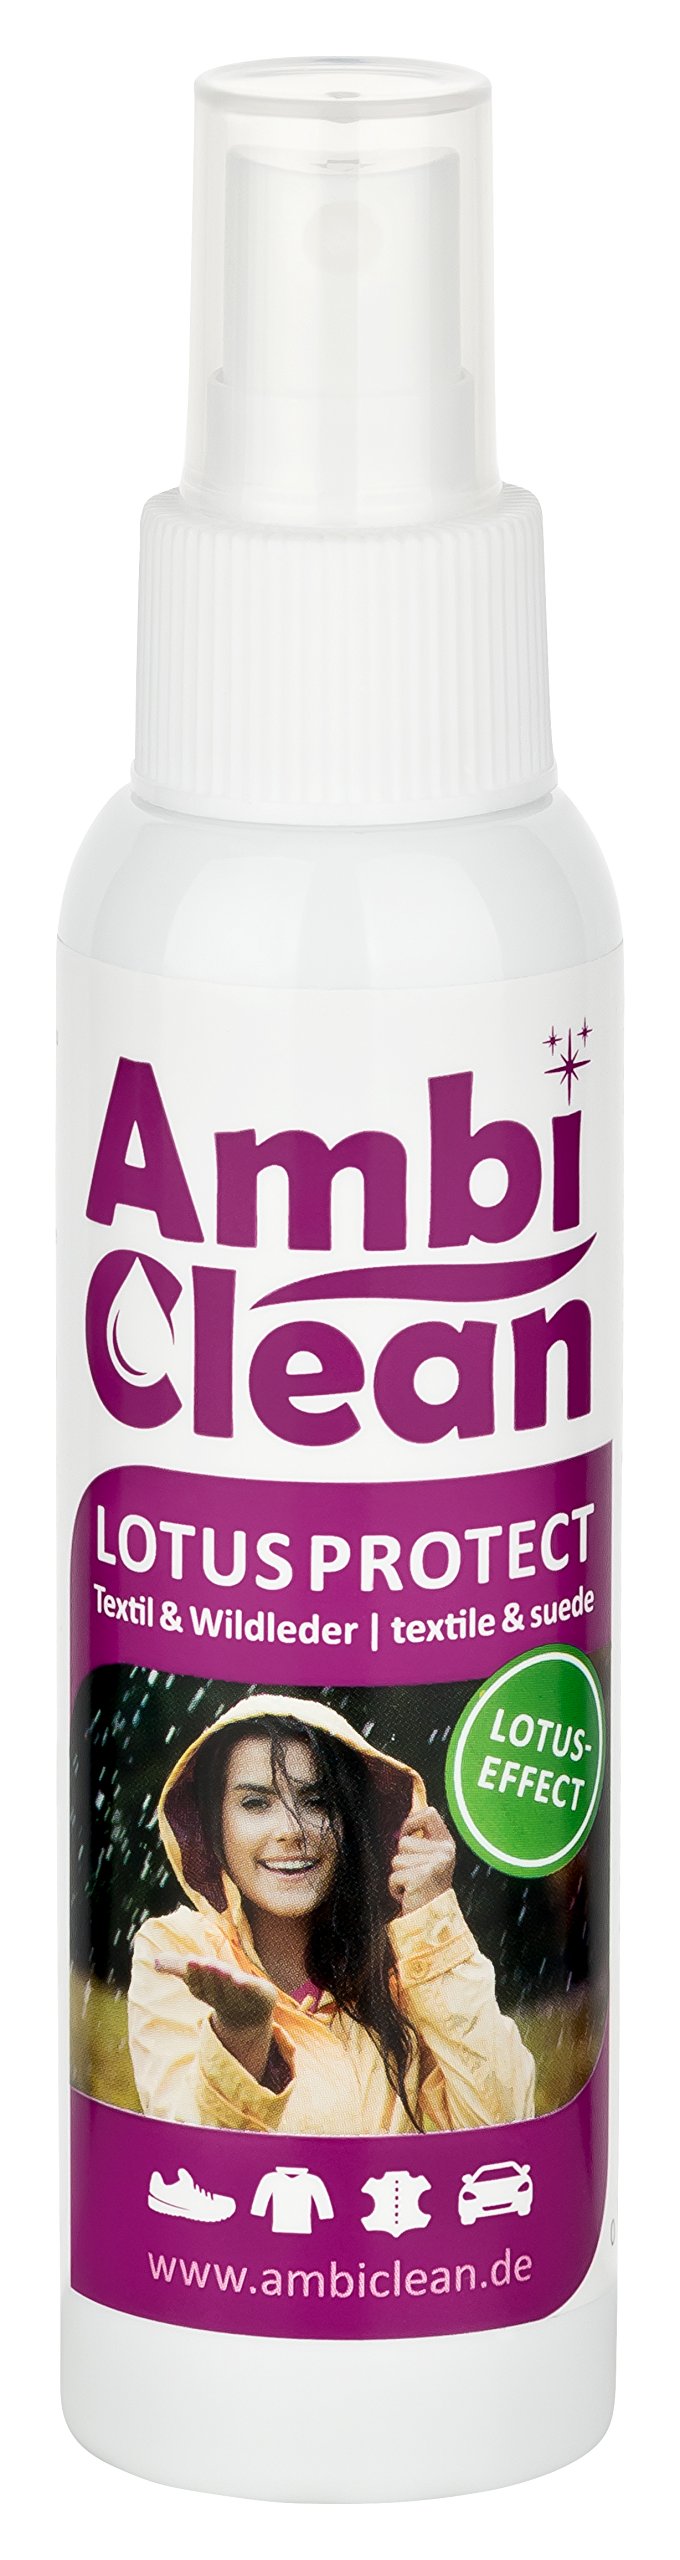 AmbiClean® Lotus Protect Imprägnierspray für Wildleder & Textilien | Schmutzabweisender Langzeitschutz mit Lotus-Effekt – 100ml (1) von AmbiClean